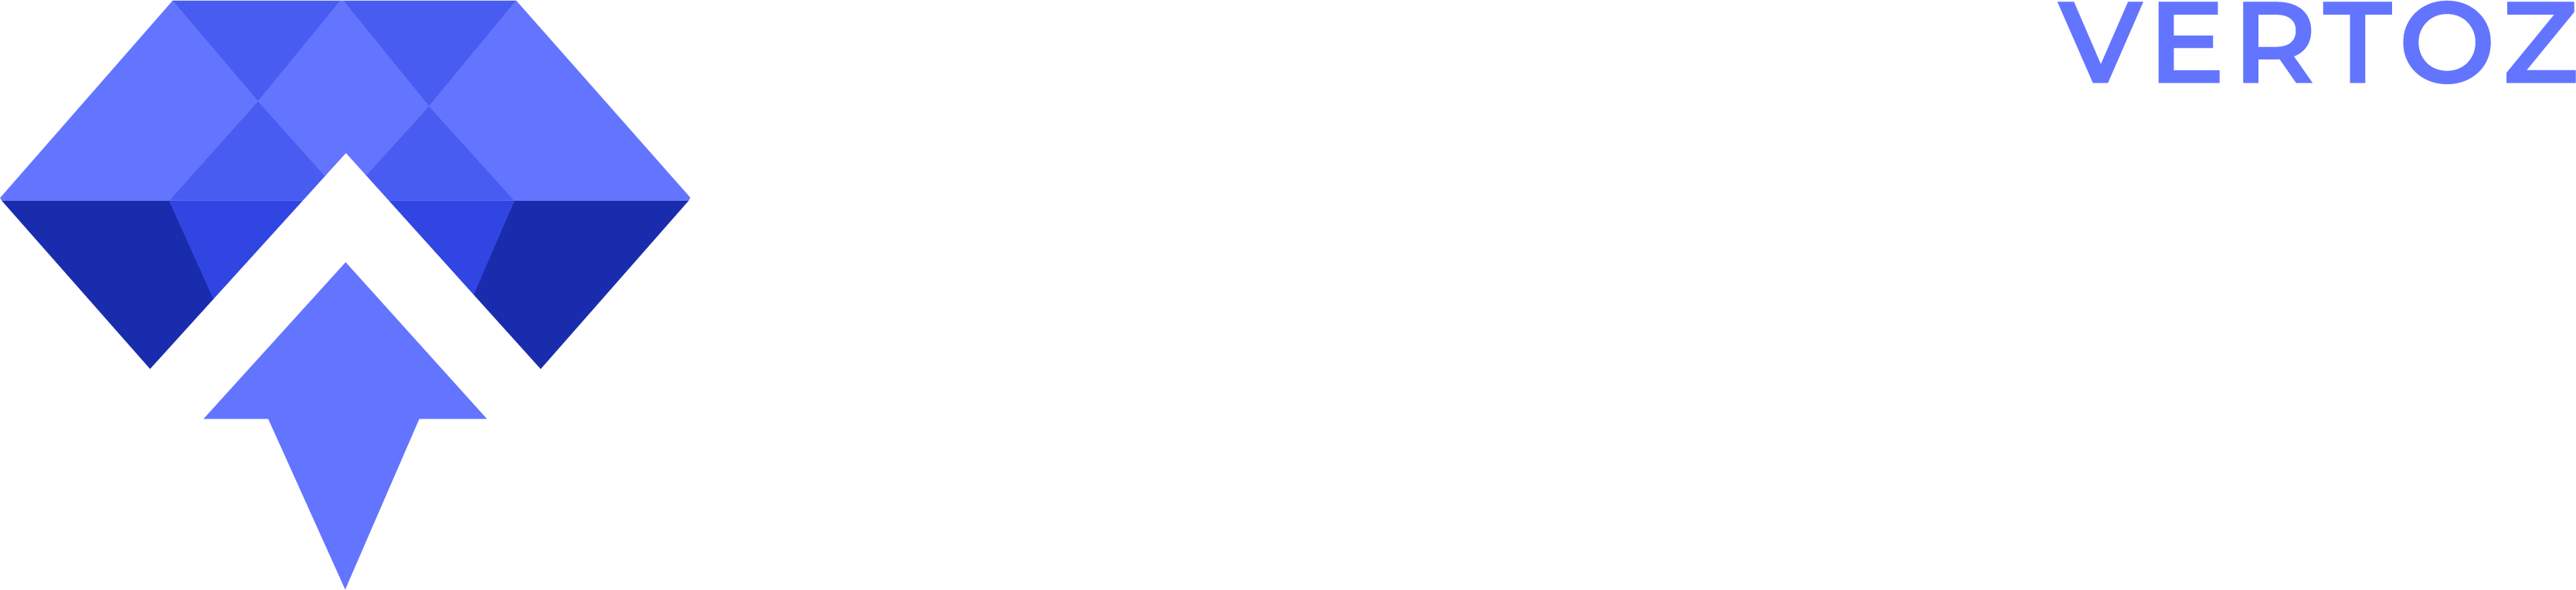 Adzurite-white-Logo